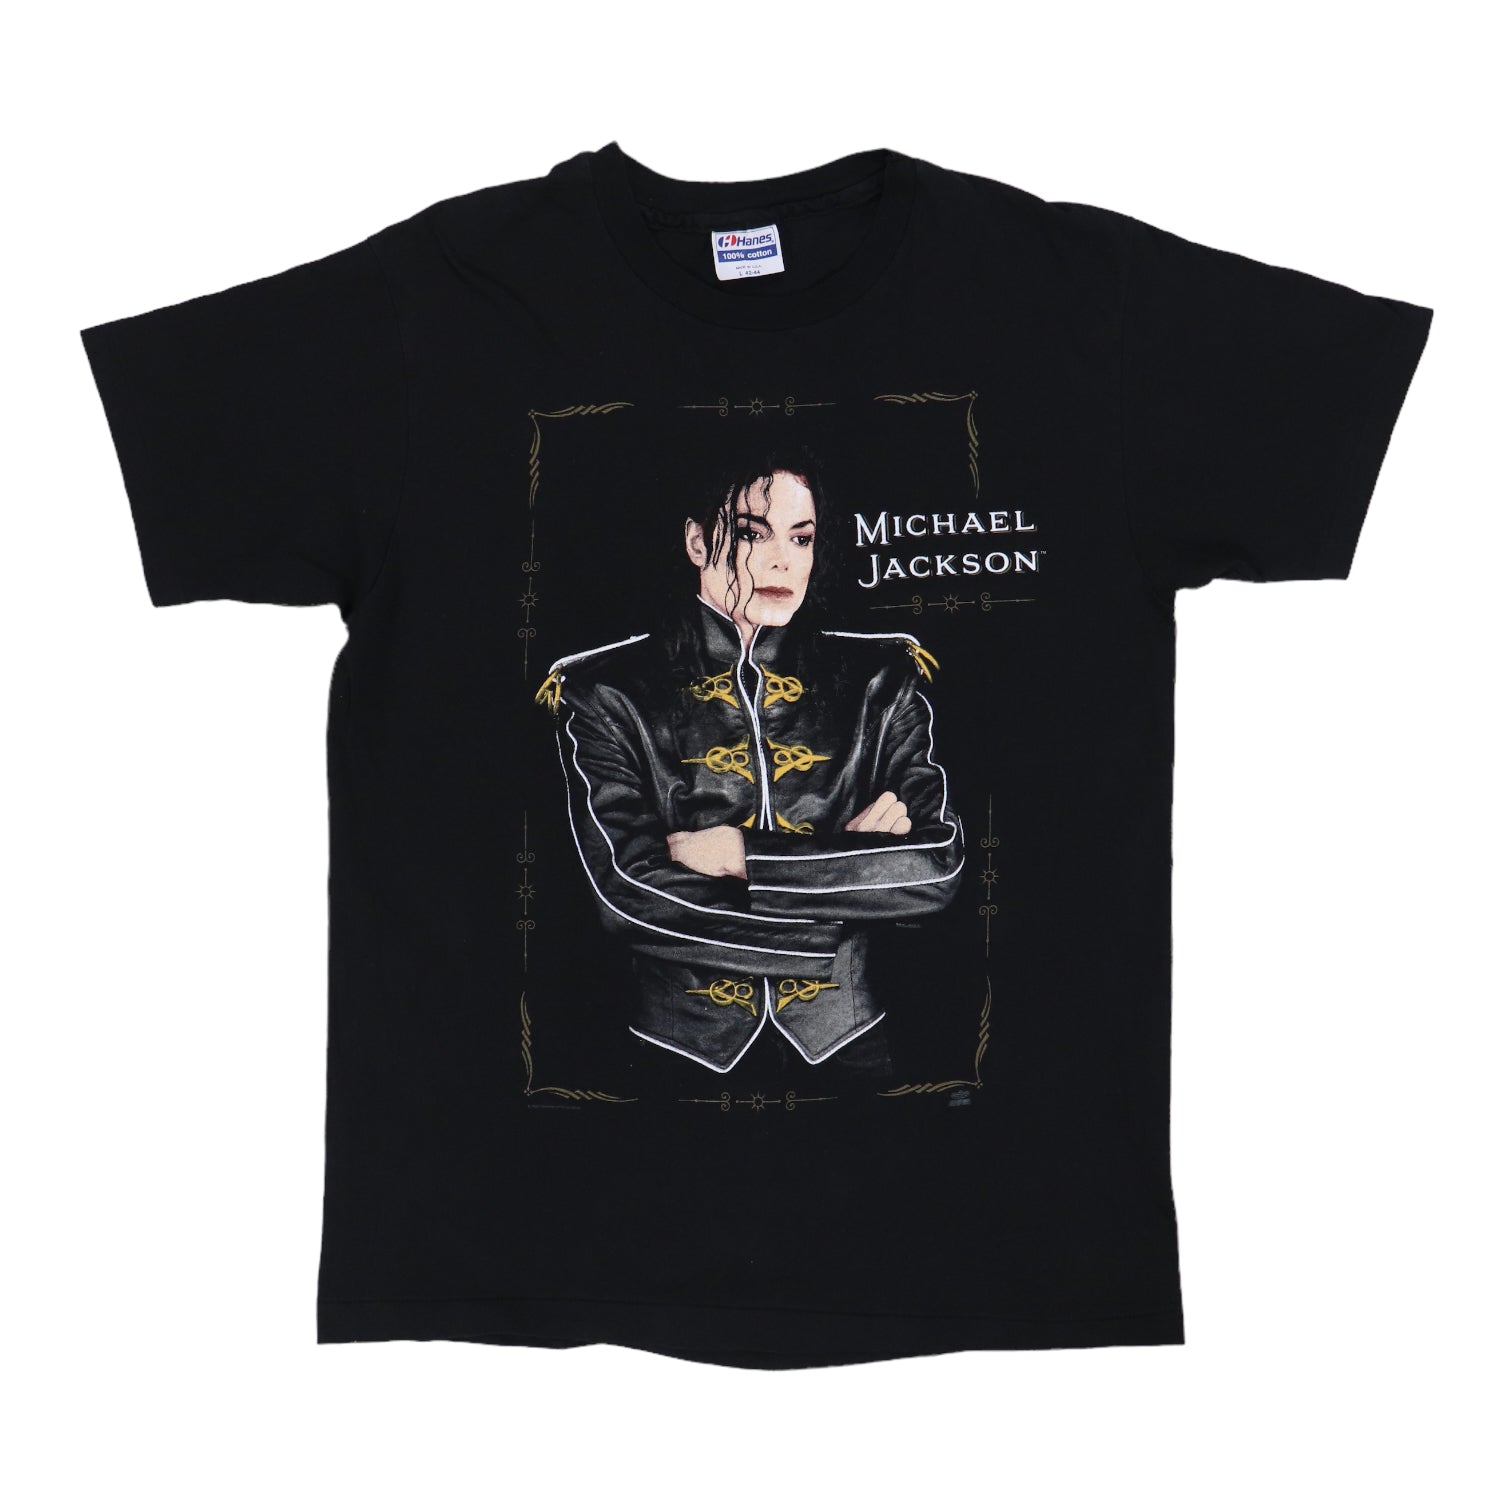 Official Michael Jackson Dangerous World Tour Vintage 1992 Short